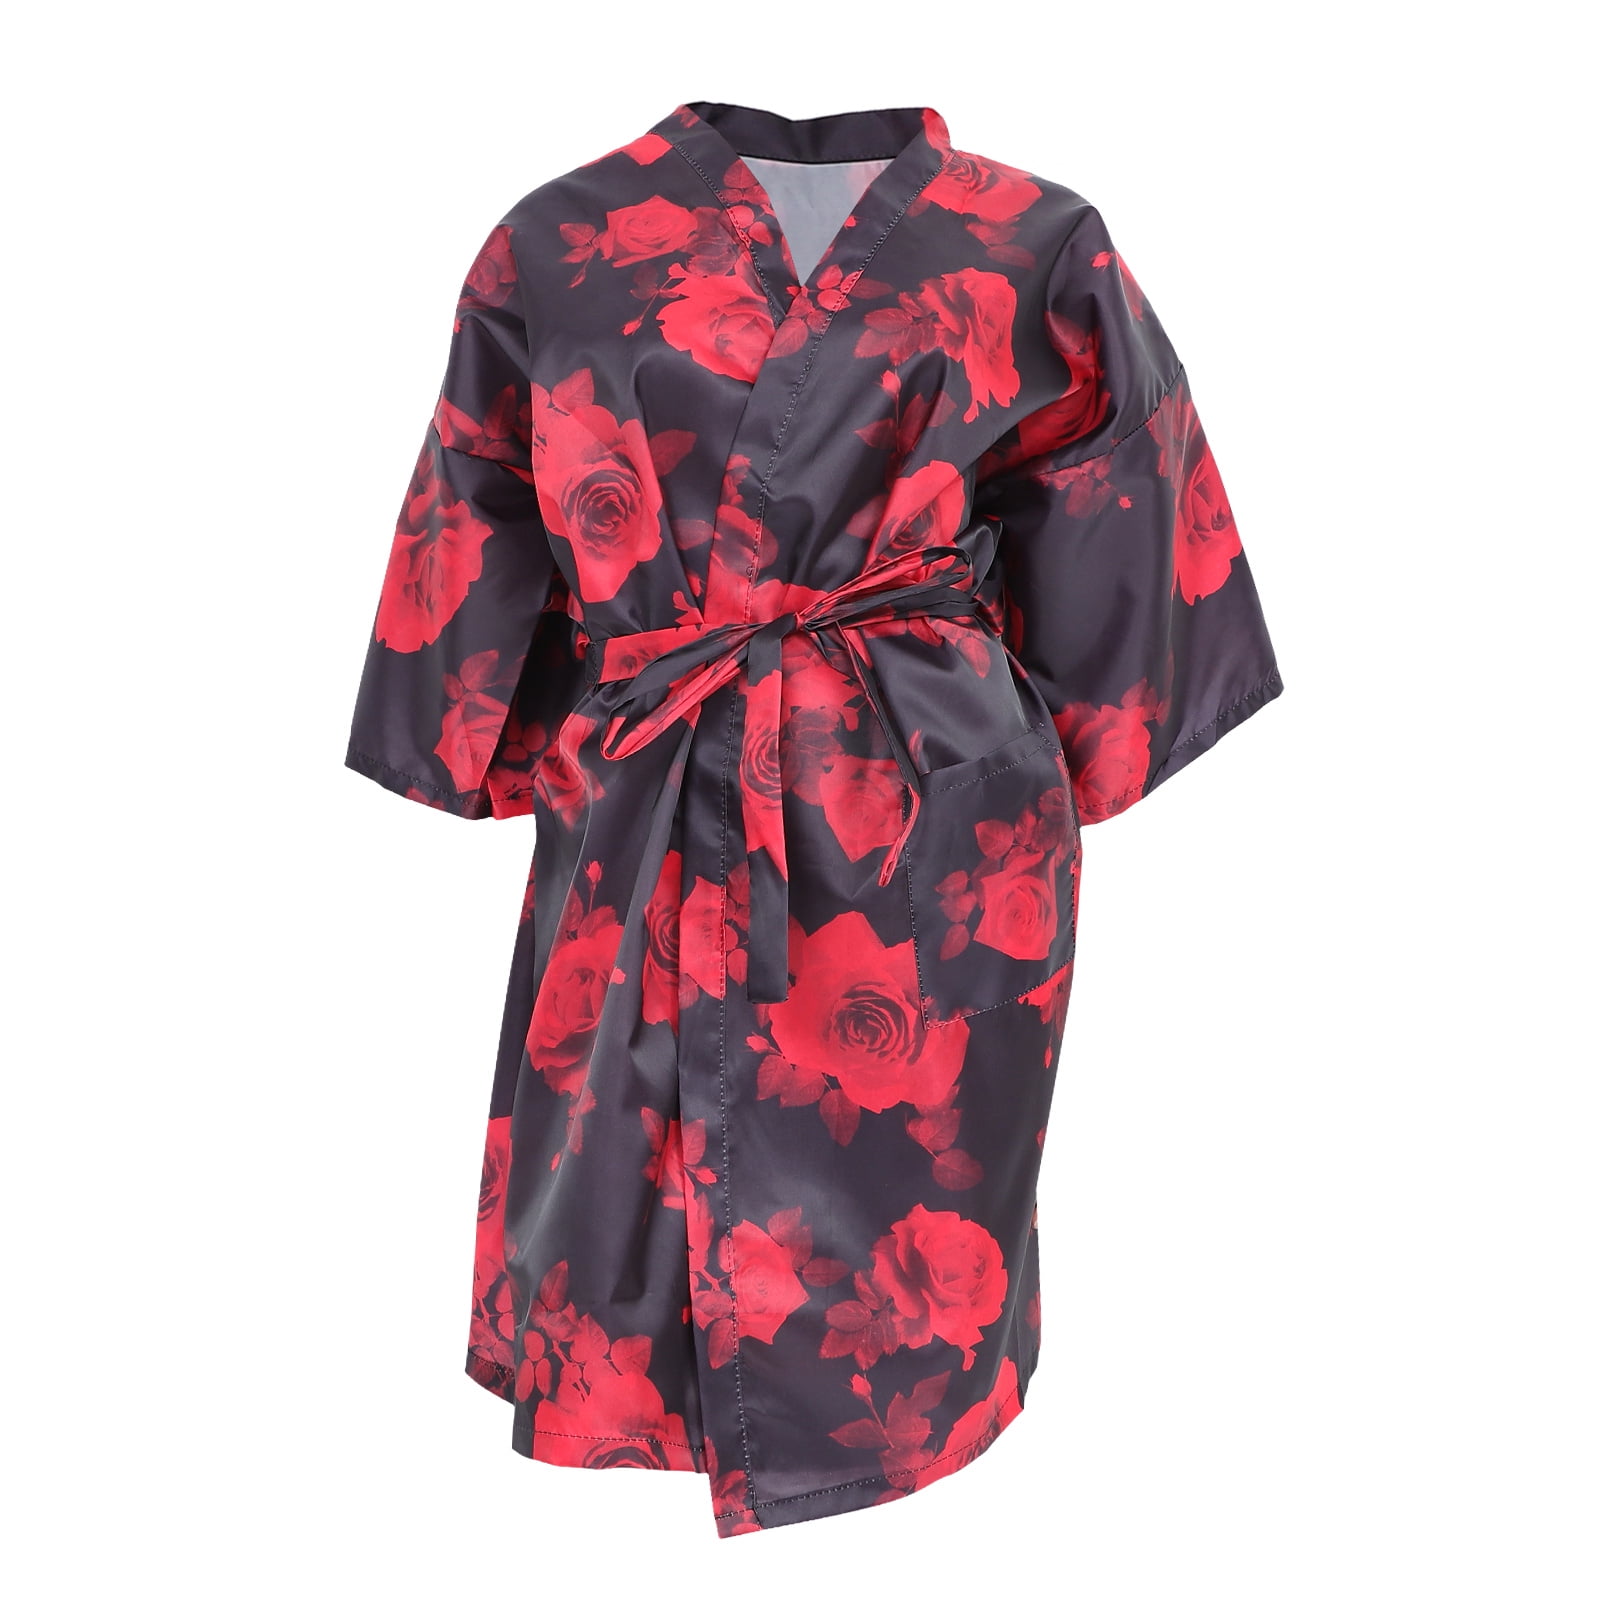 NUOLUX Salon Gown Client Robe Hair Kimono Cape Smock Smocks Style ...